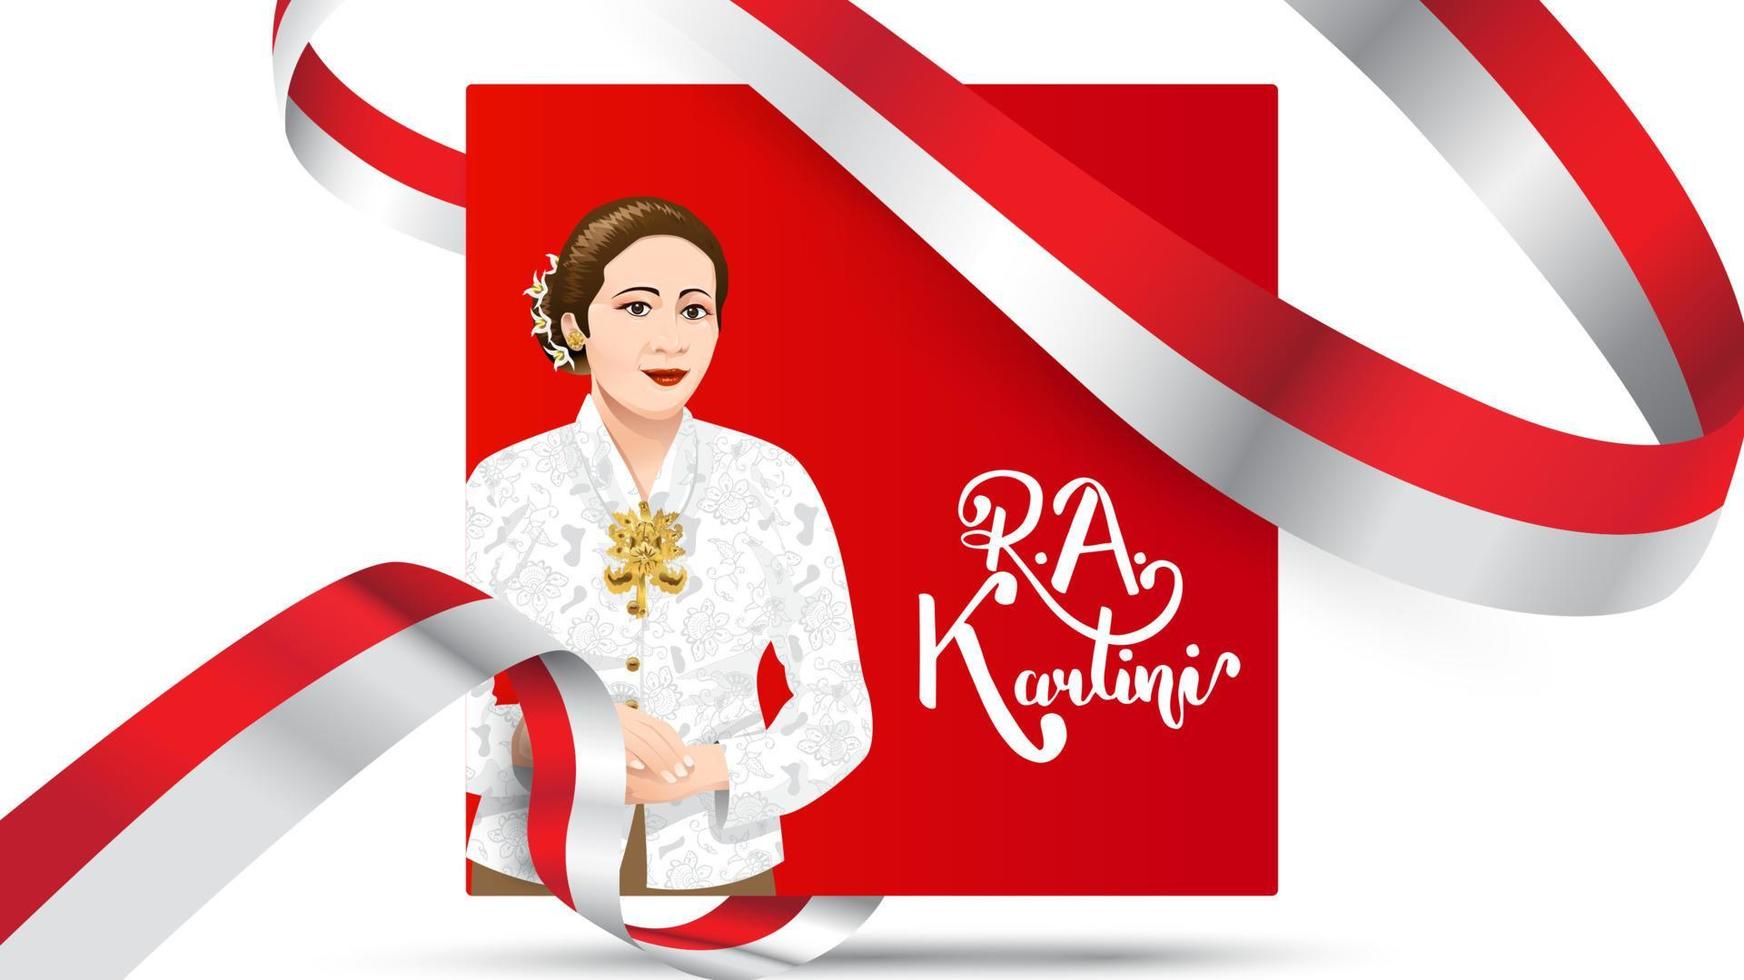 kartini day, ra kartini gli eroi delle donne e dei diritti umani in indonesia. sfondo modello banner design - vettore